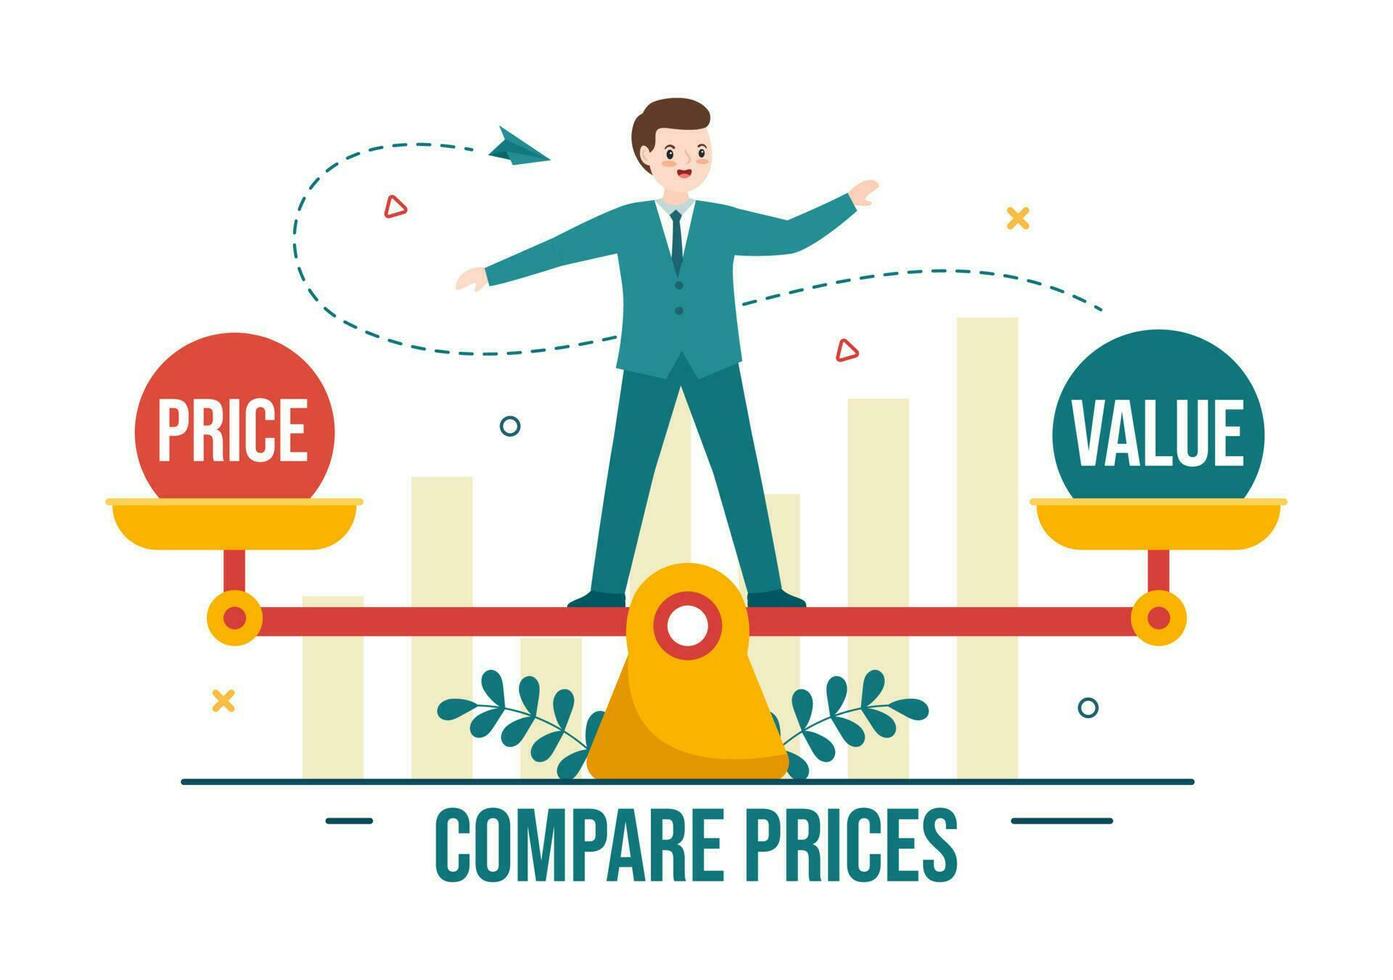 comparer des prix vecteur illustration de inflation dans économie, Balance avec prix et valeur des biens dans plat dessin animé main tiré atterrissage page modèles